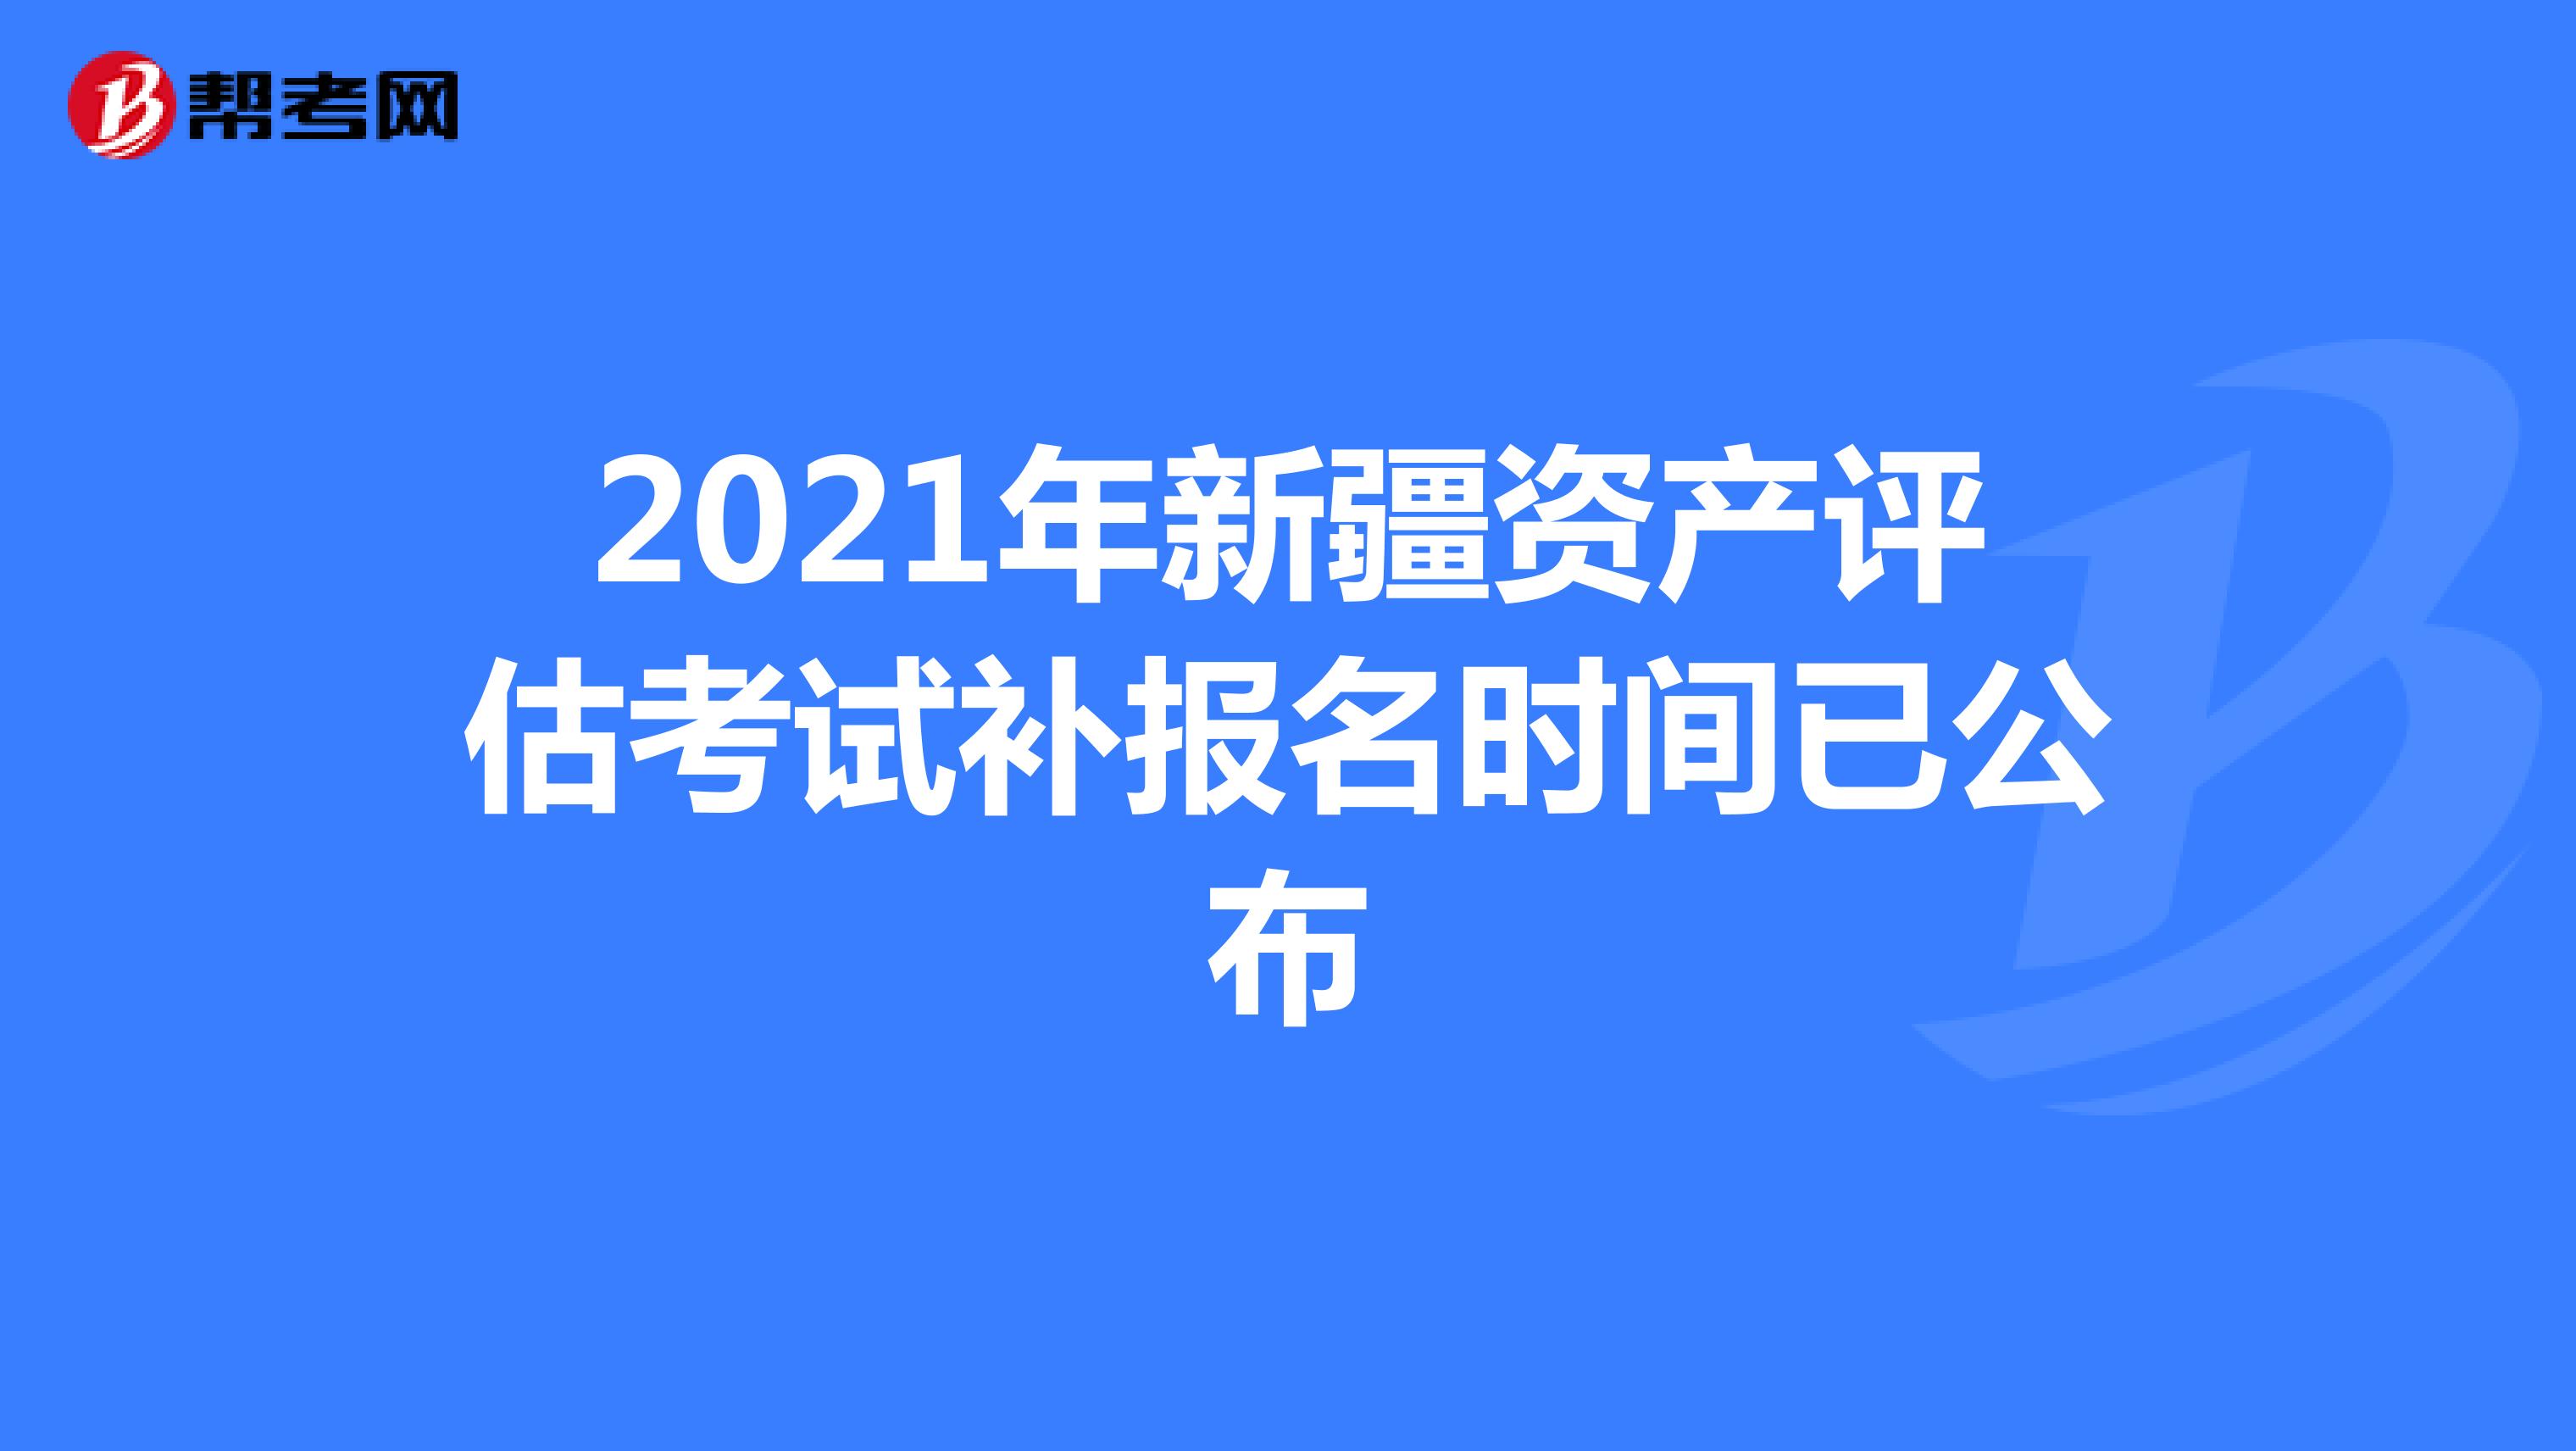 2021年新疆资产评估考试补报名时间已公布